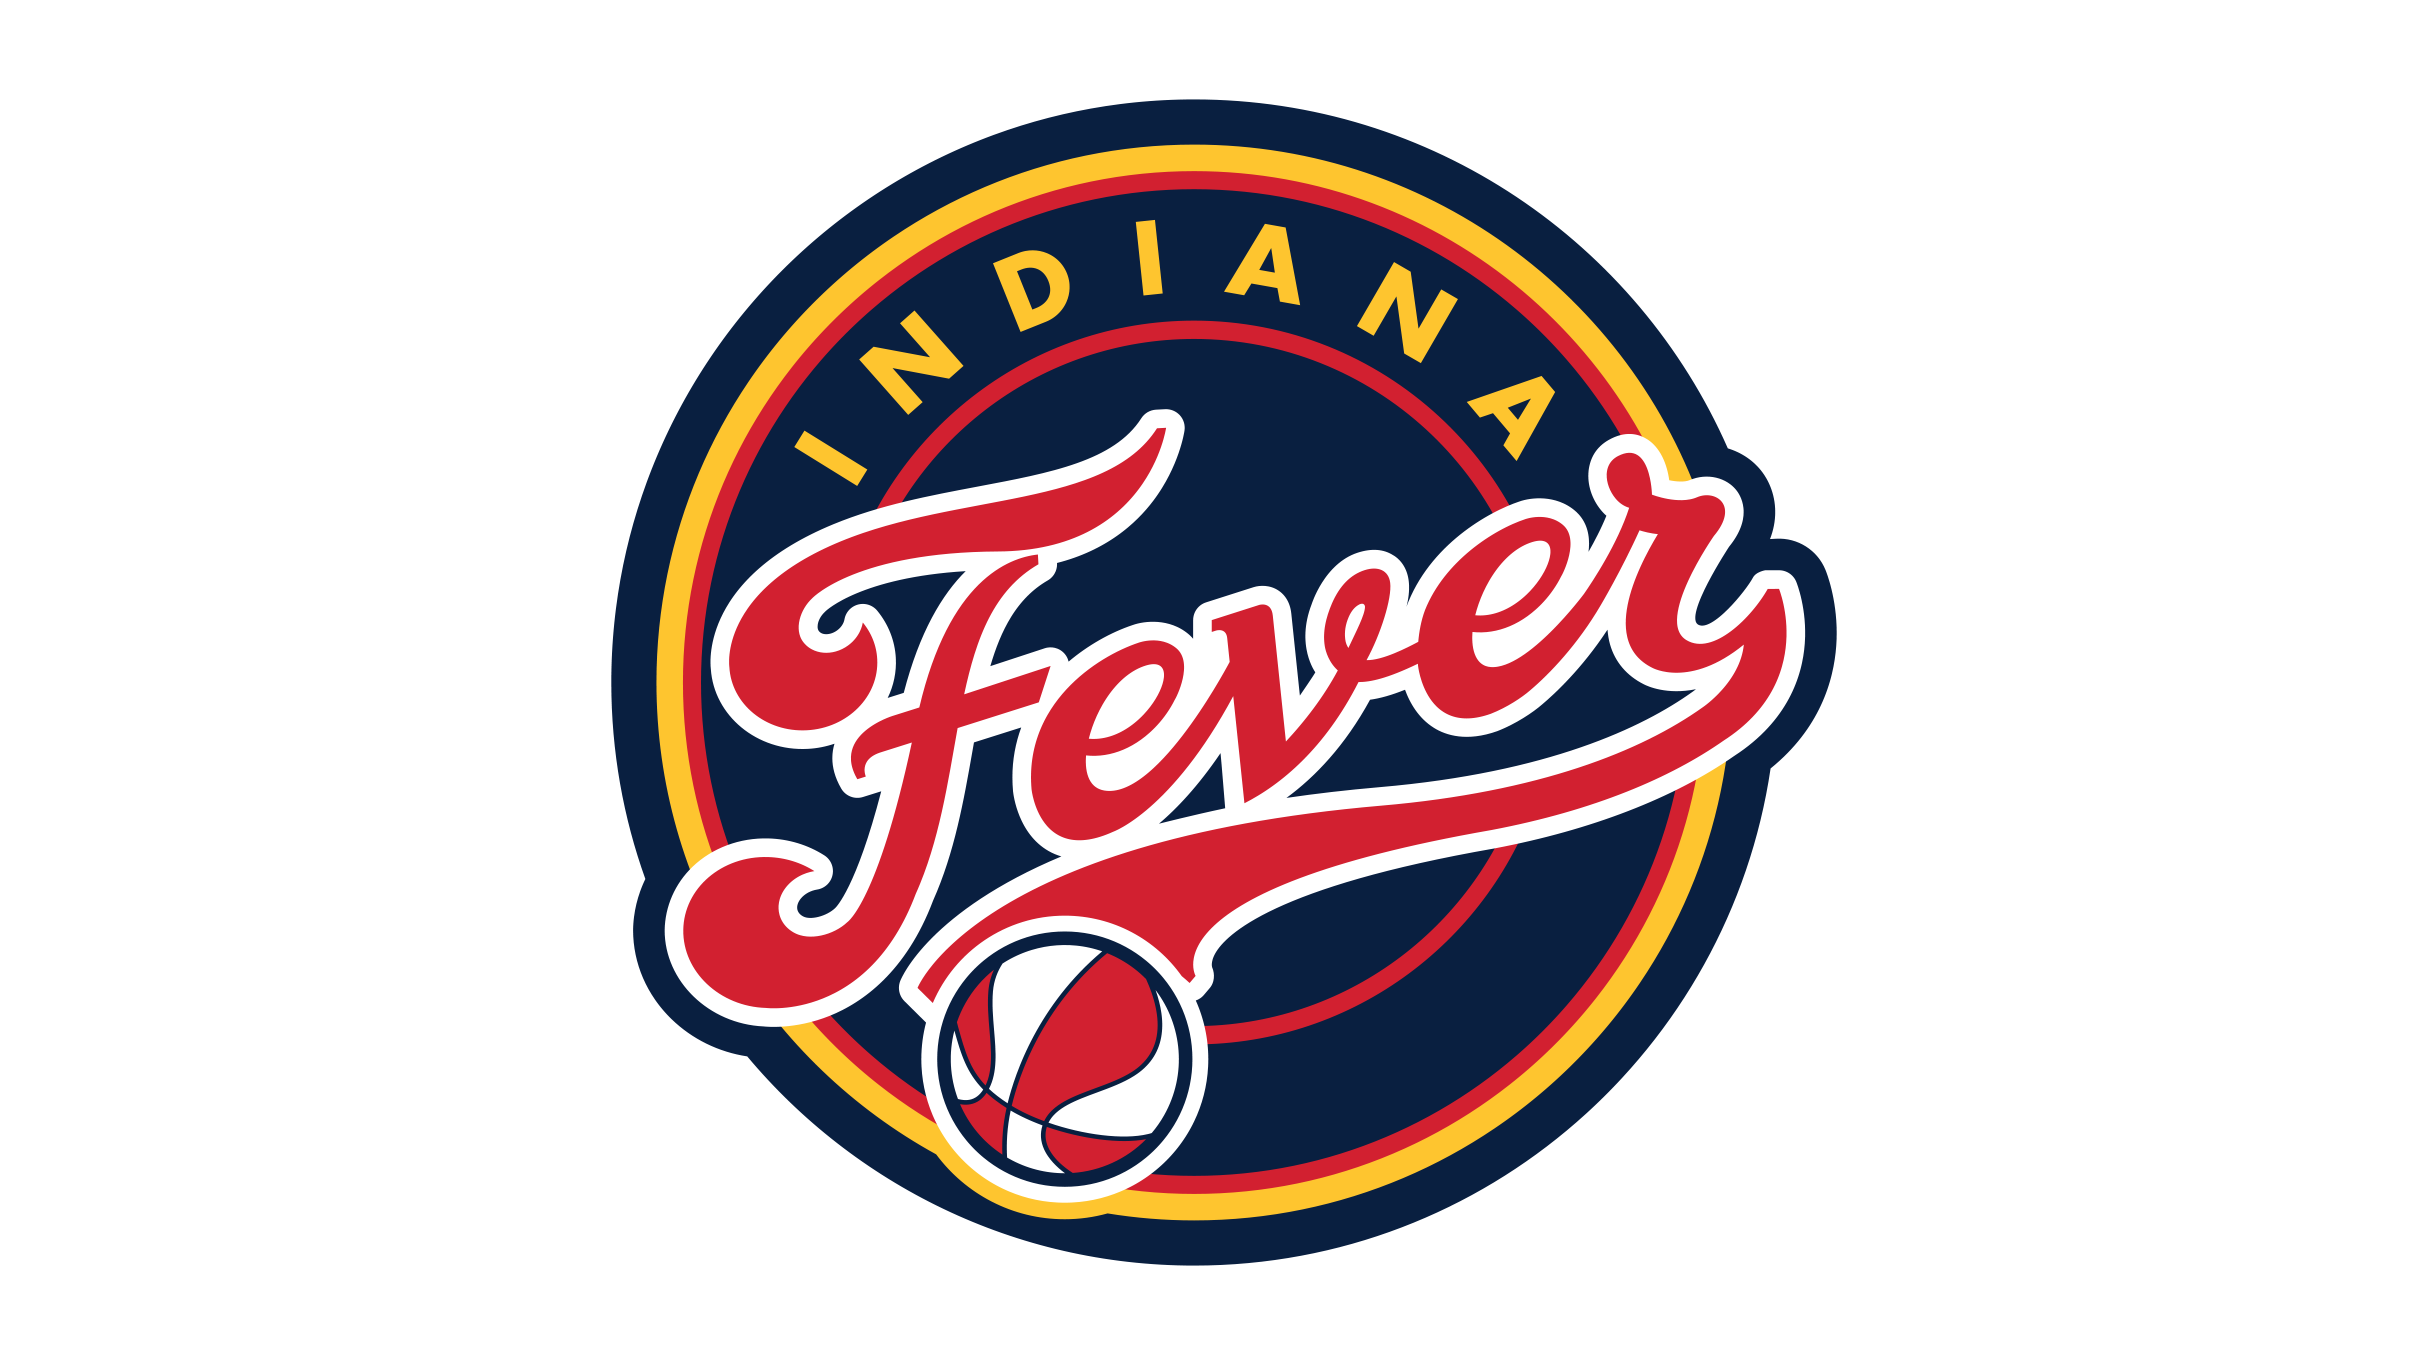 Indiana Fever vs. Atlanta Dream presales in Indianapolis